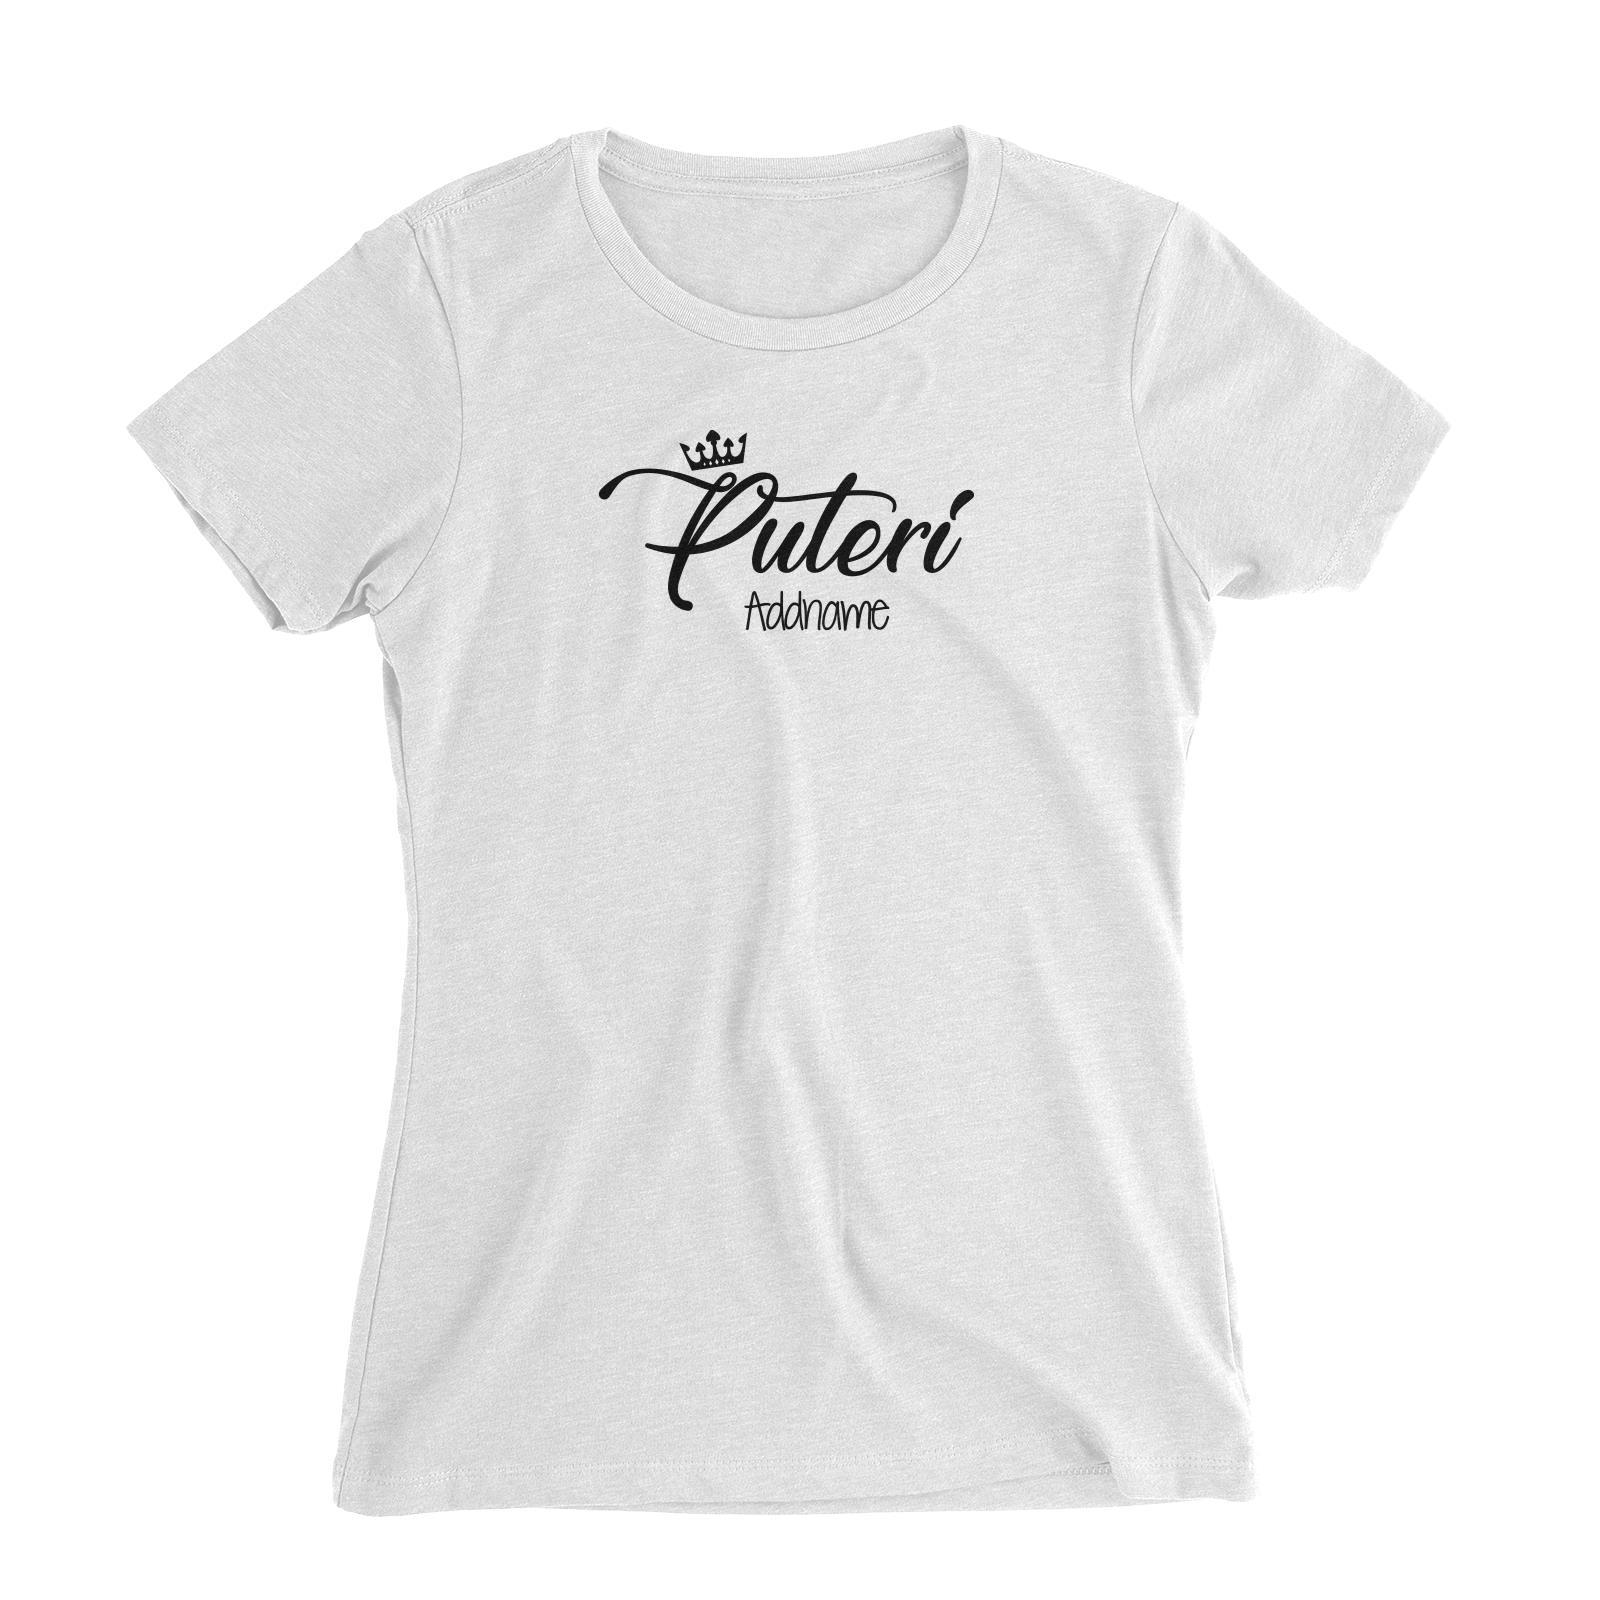 Puteri with Tiara Women's Slim Fit T-Shirt